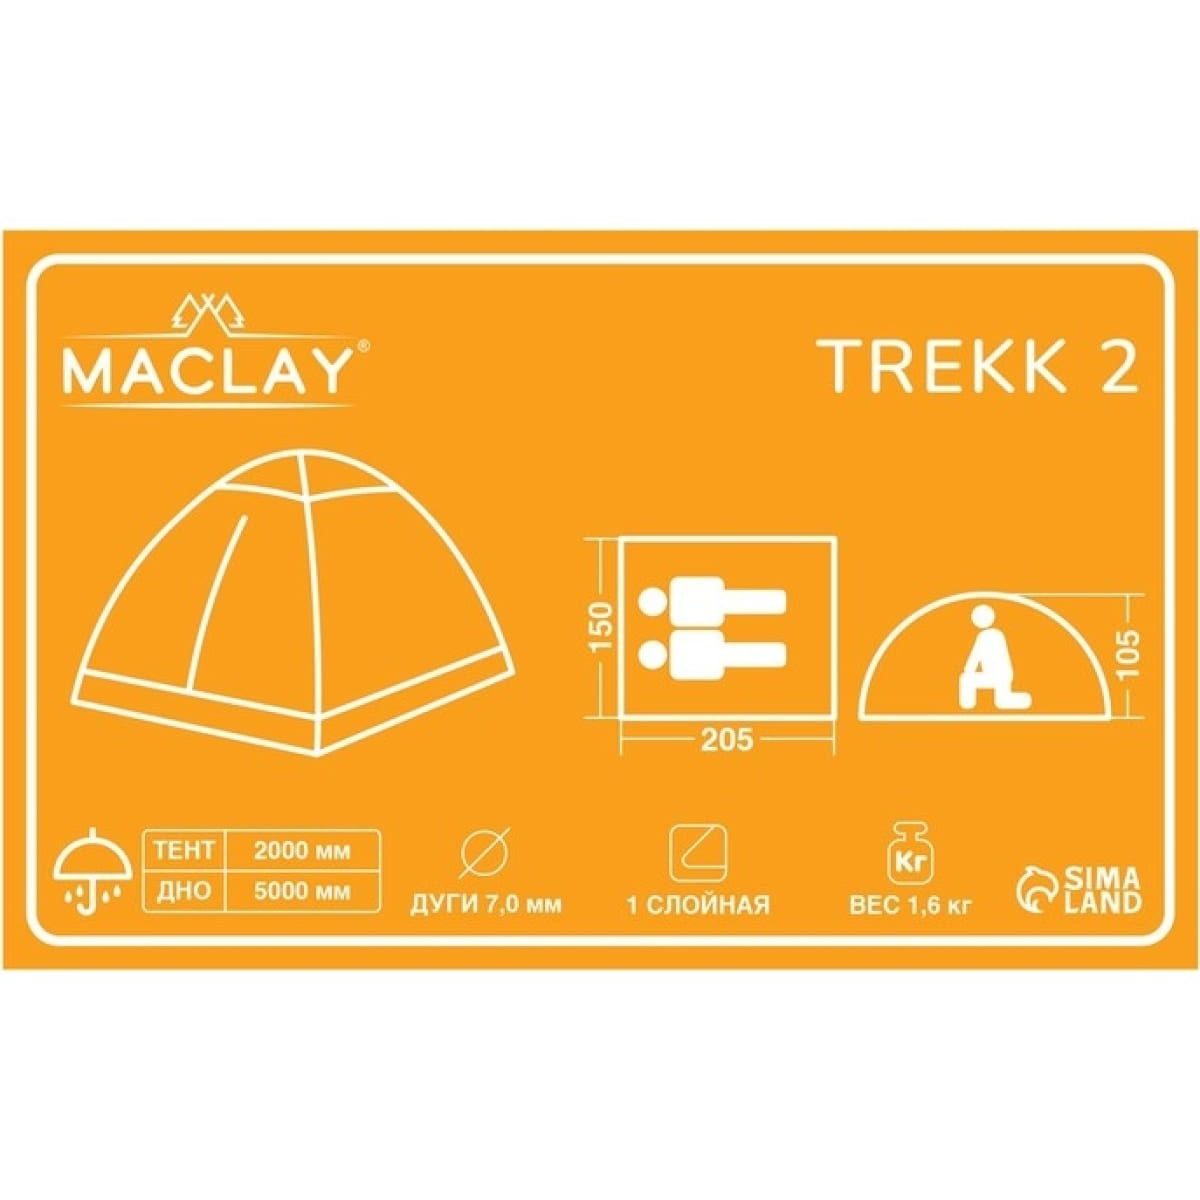 Палатка Maclay Trekk треккинговая 2 размер 205х150х105 см, цвет чёрный - фото 6